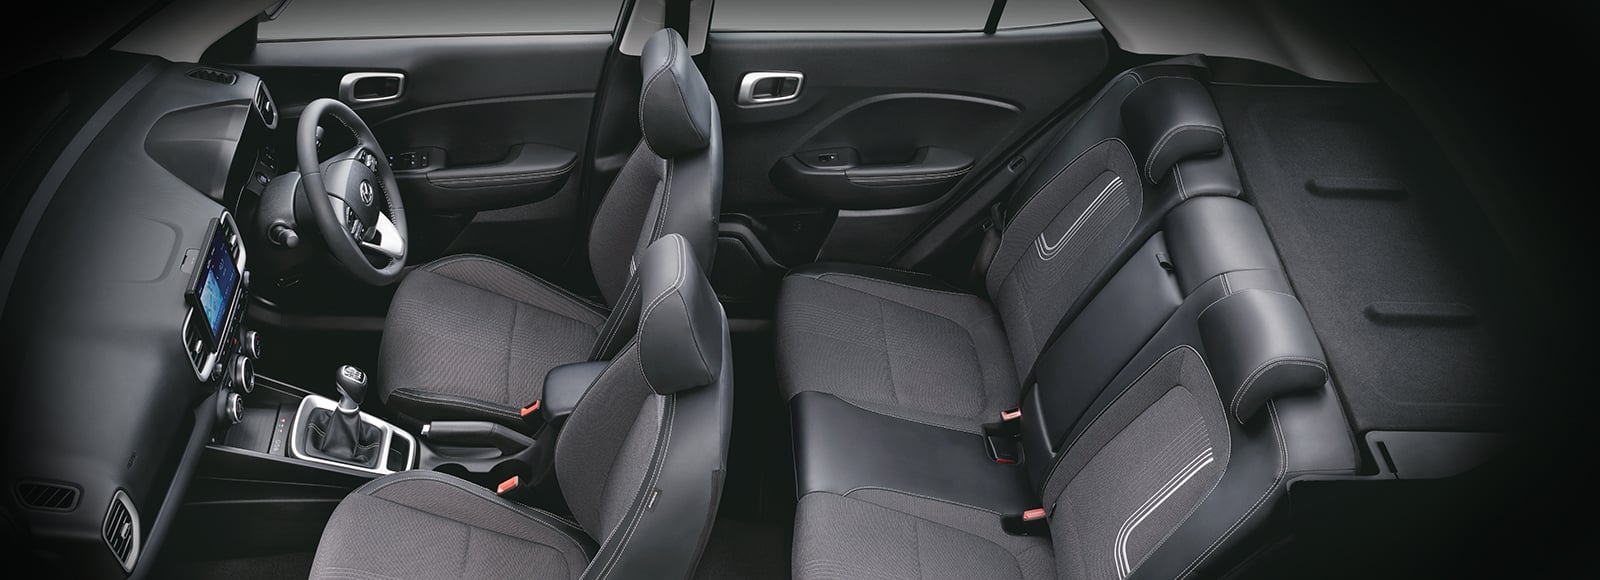 Hyundai Venue interior - Seats